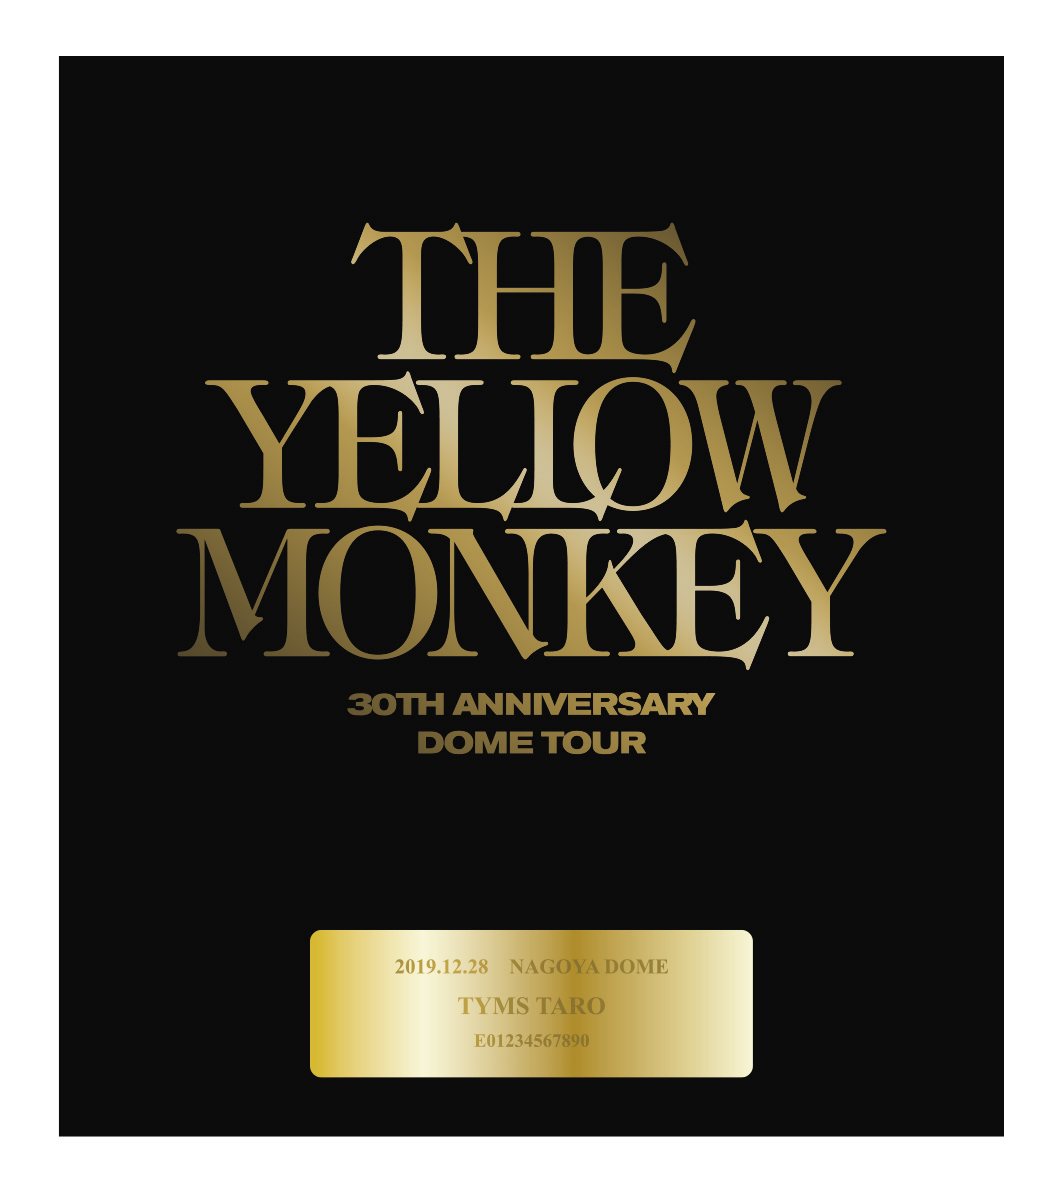 The Yellow Monkey タワーレコードカフェ表参道店 札幌ピヴォ店にて衣装 写真展開催 Spice エンタメ特化型情報メディア スパイス